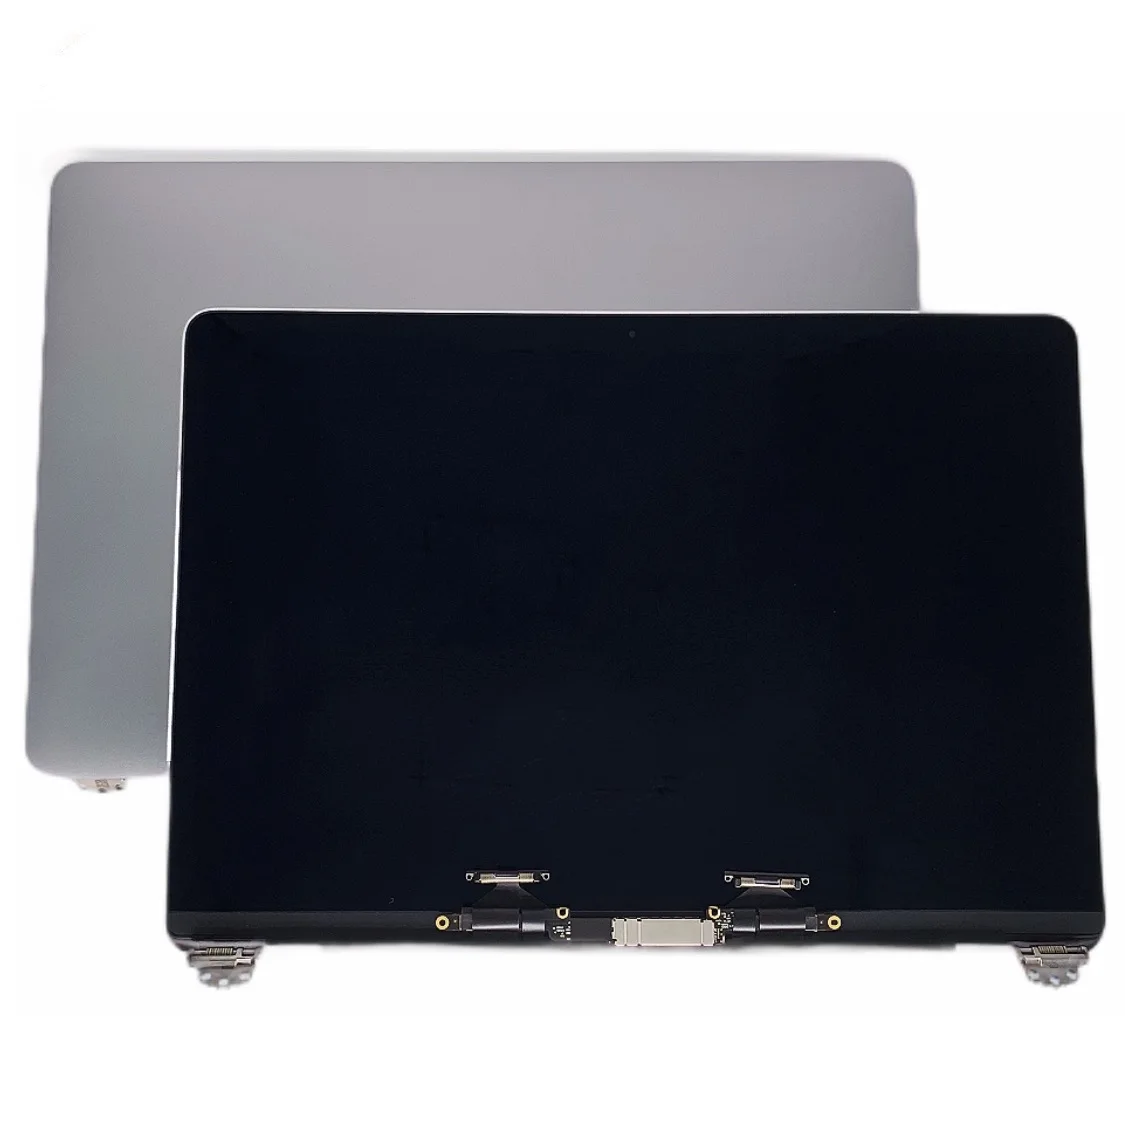 

.. ЖК-экран для ноутбука A2338, экран в сборе для Macbook Retina 13 дюймов M1, полный ЖК-дисплей серебристо-серый 2020 EMC 3578